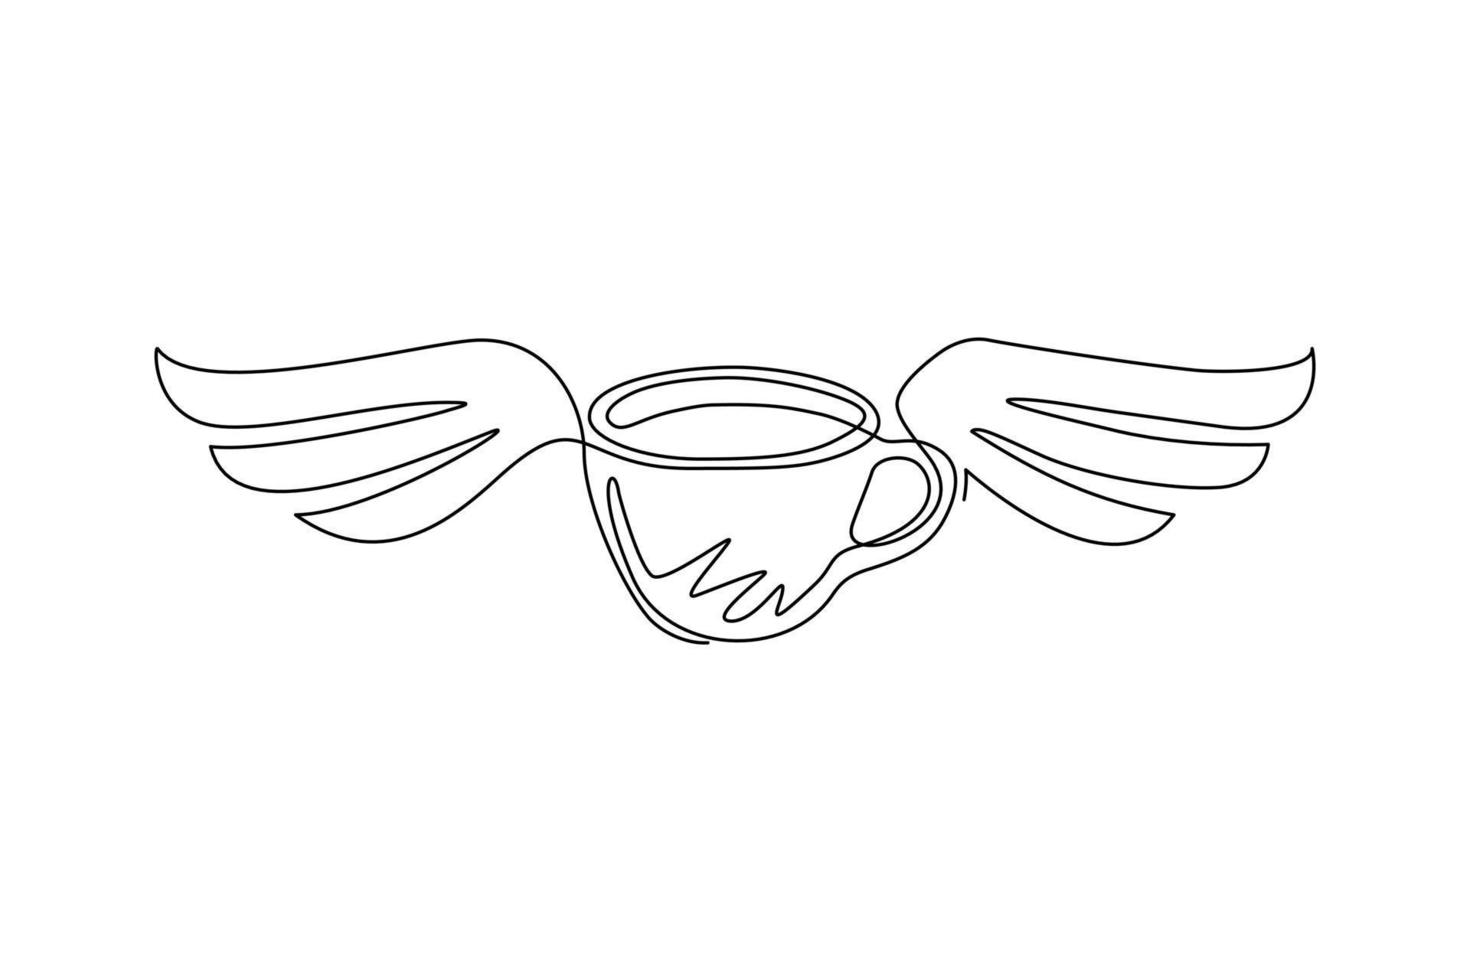 tazza di caffè con le ali di disegno a una linea singola. idea per pubblicizzare bevande al caffè, biglietti da visita, branding e identità aziendale. illustrazione vettoriale grafica moderna con disegno a linea continua